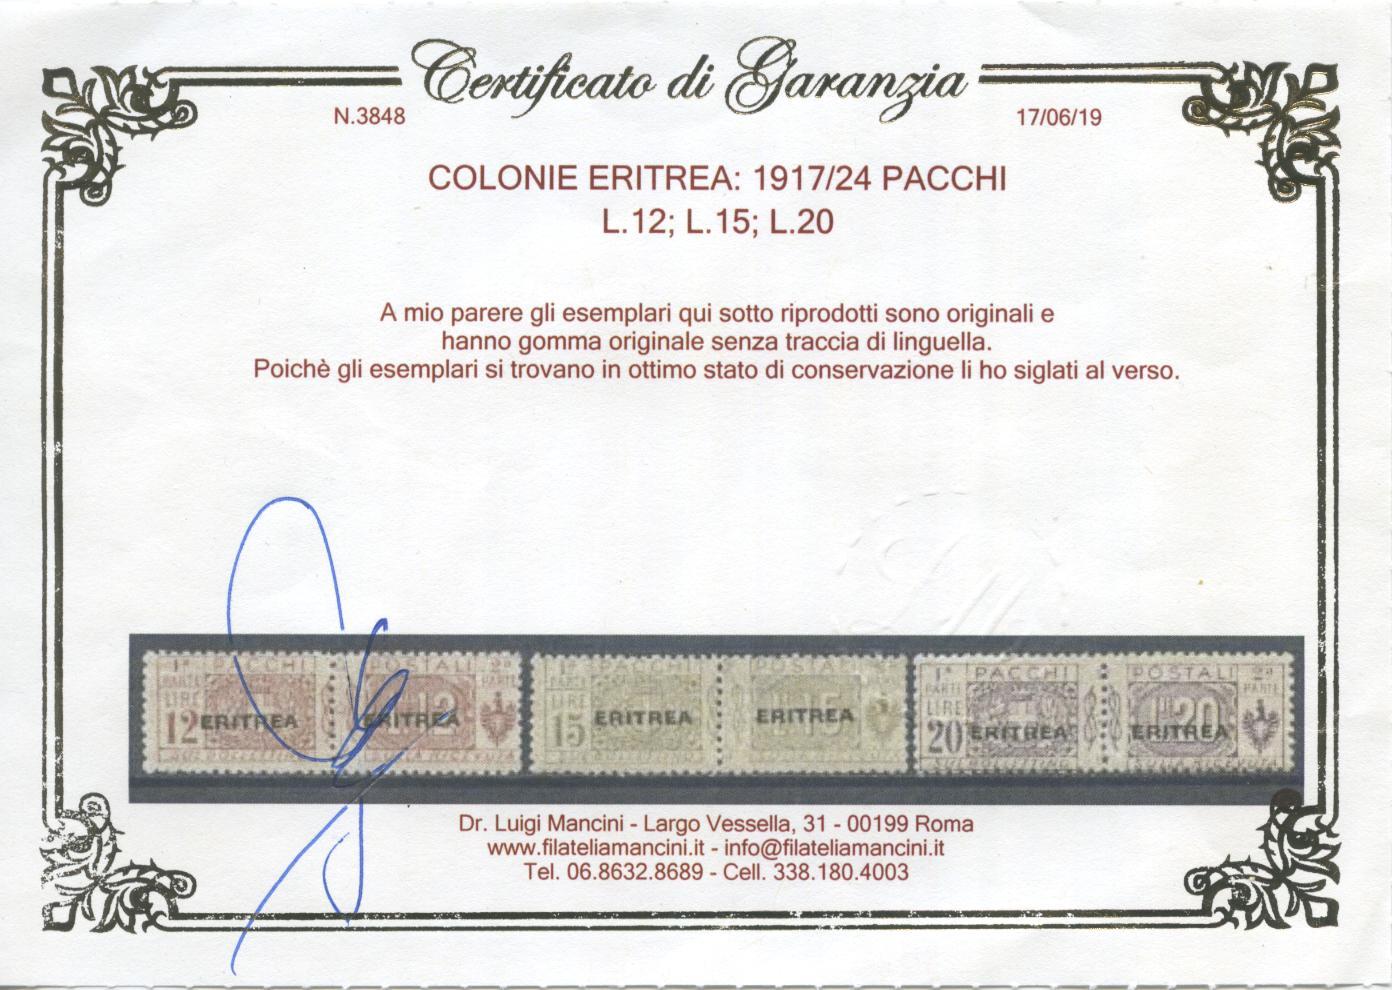 Scansione lotto: COLONIE ERITREA 1917/24 PACCHI 13V. 3 **  CERT.